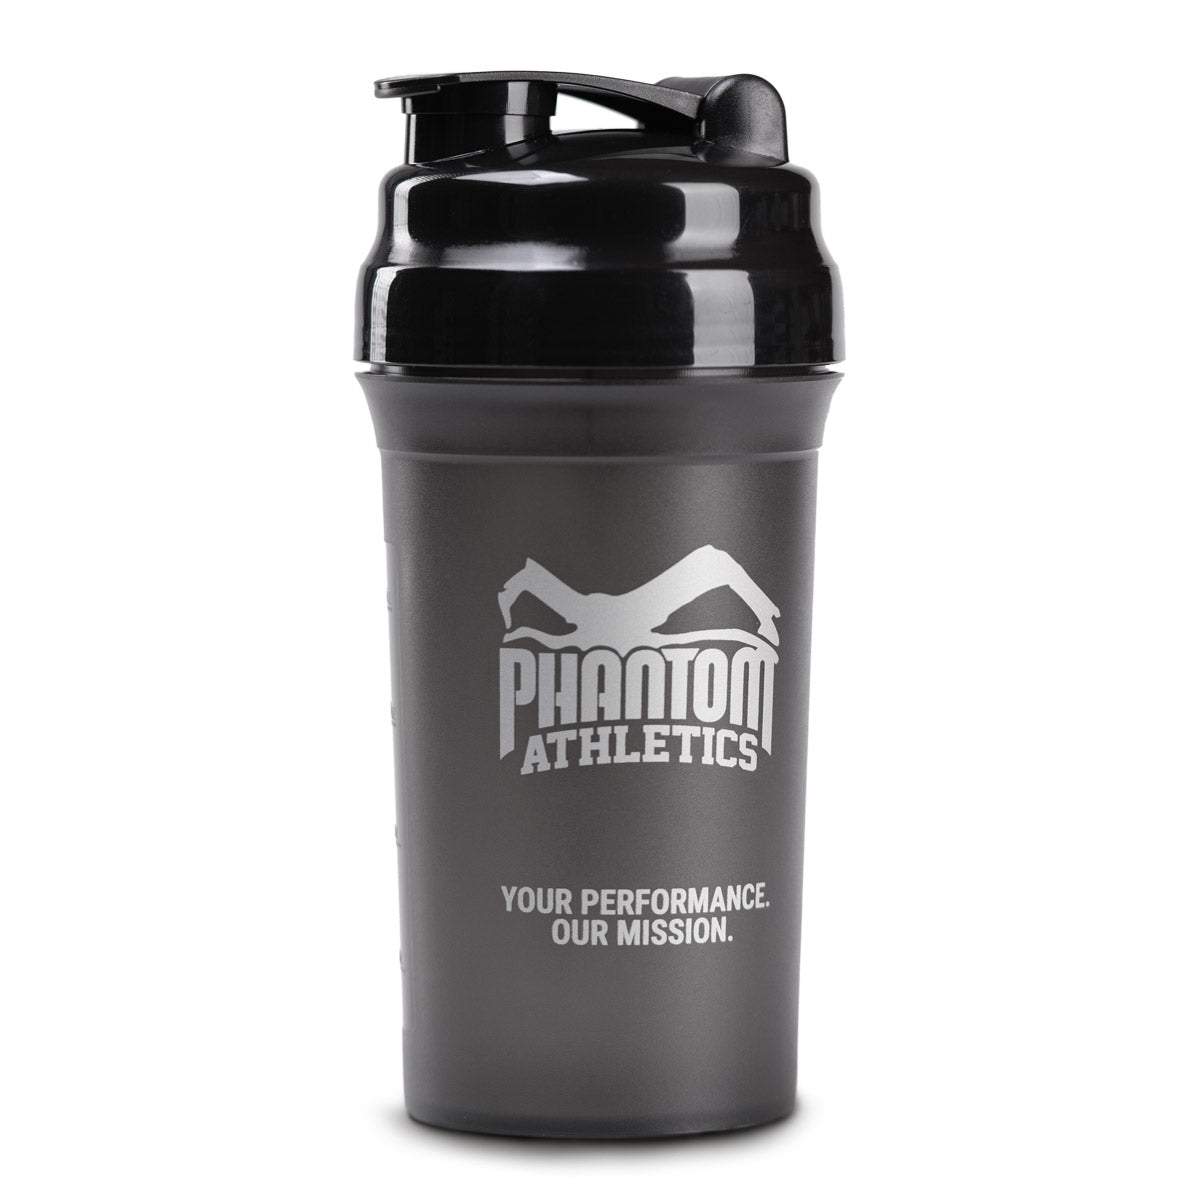 Der Phantom Athletics Shaker für Proteinshakes und andere Nahrungsergänzung im Kampfsport